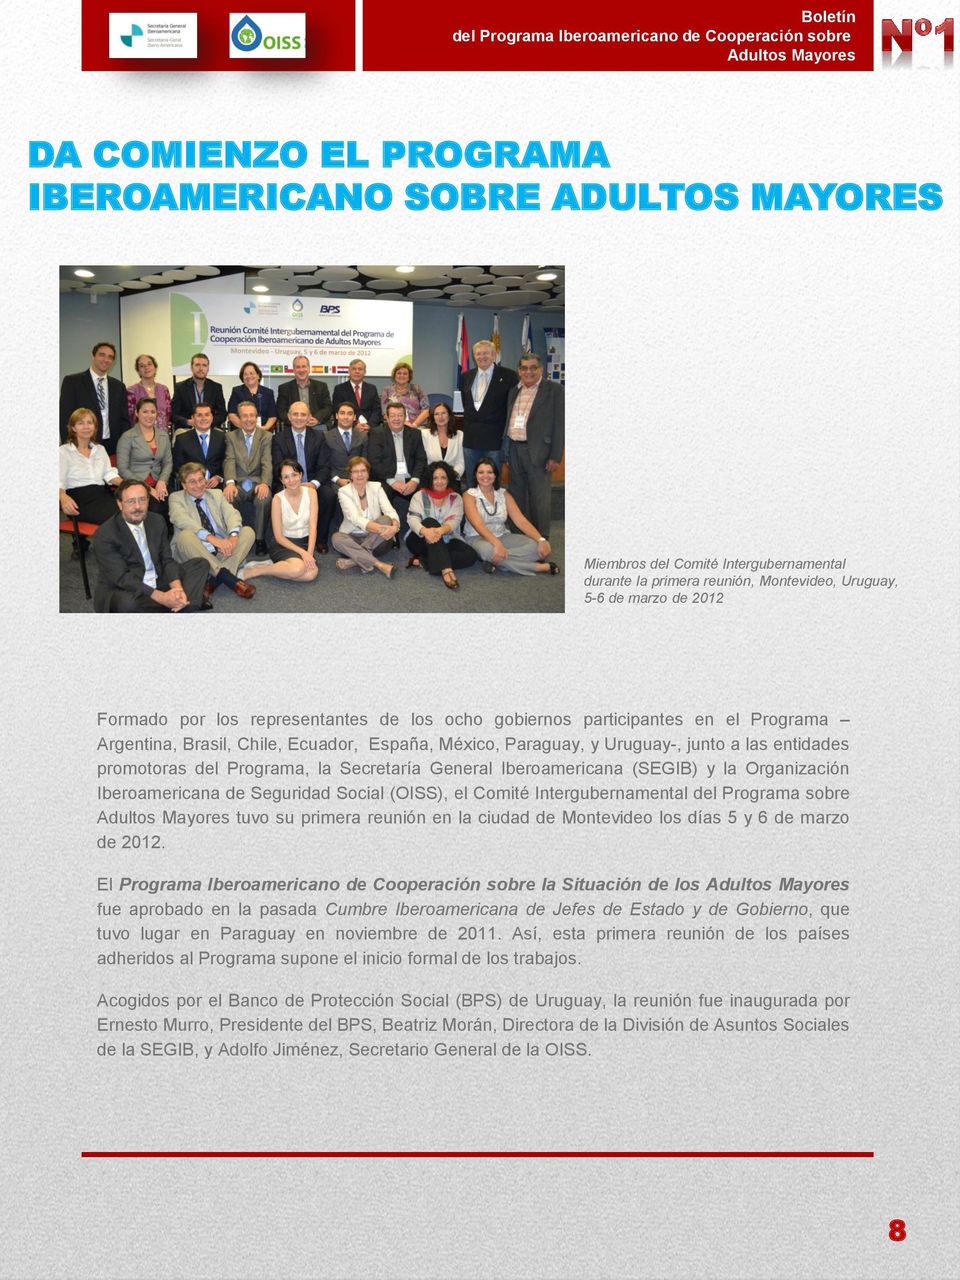 General Iberoamericana (SEGIB) y la Organización Iberoamericana de Seguridad Social (OISS), el Comité Intergubernamental del Programa sobre tuvo su primera reunión en la ciudad de Montevideo los días